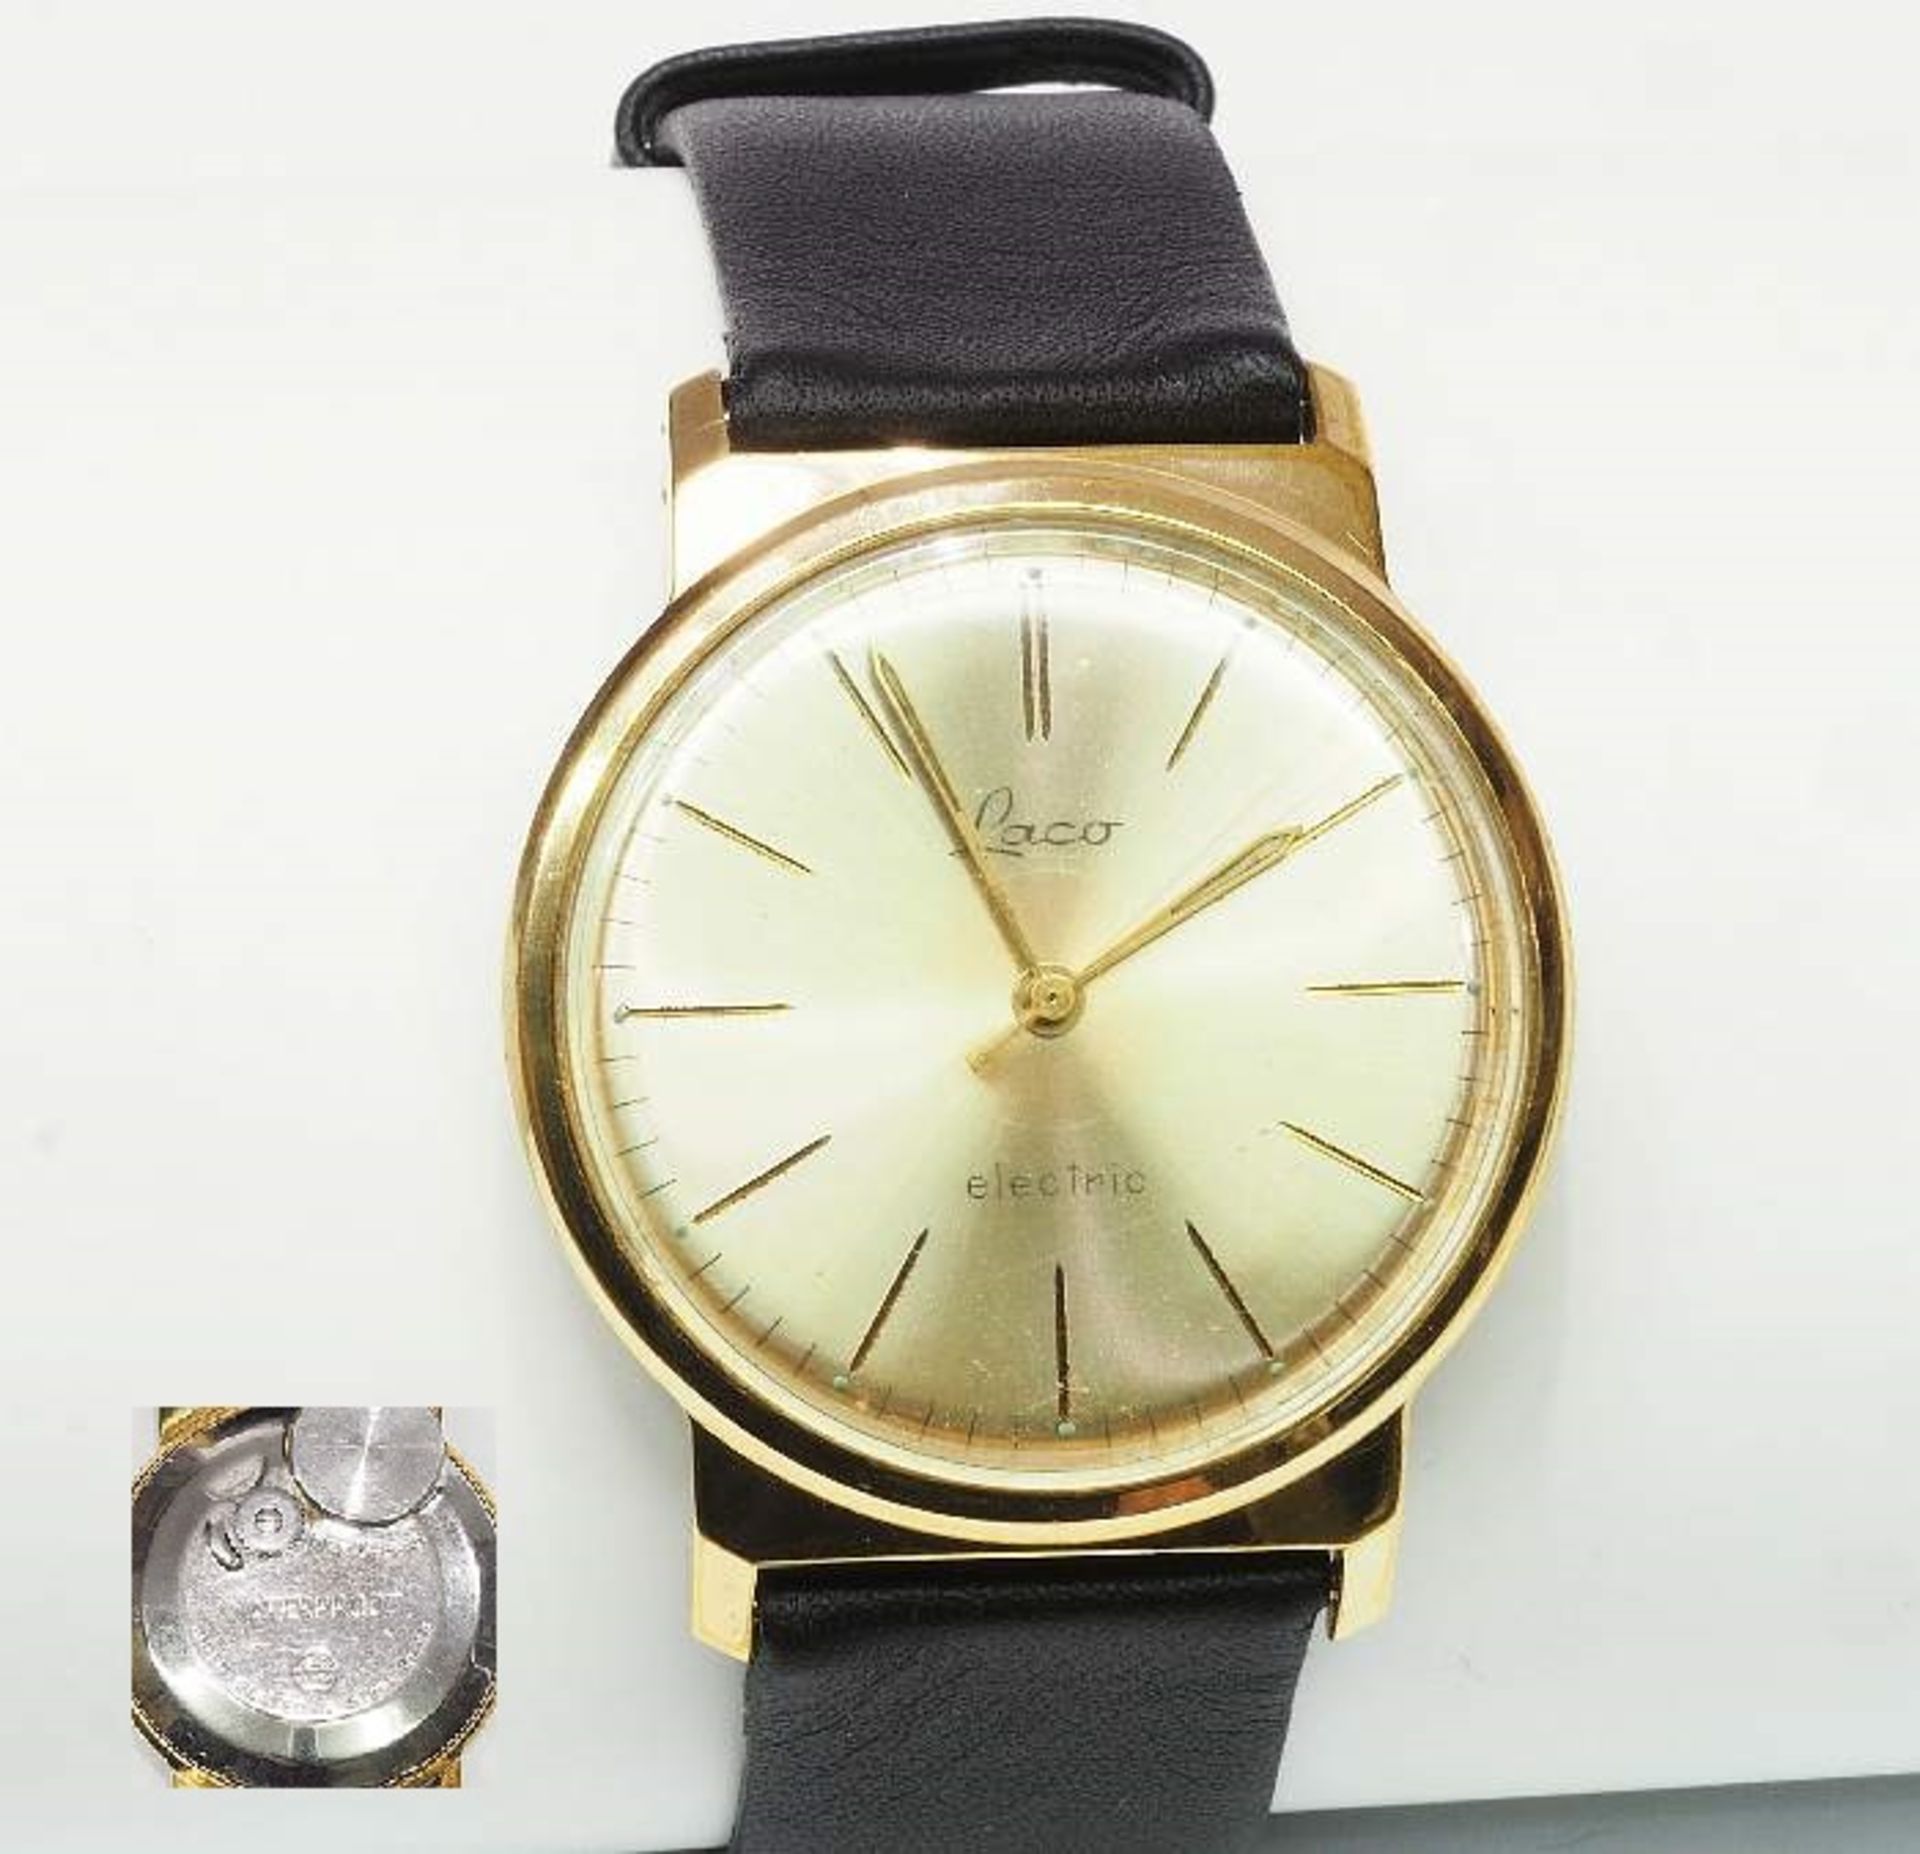 Herren Armbanduhr Vintage von LACO. Quarkwerk, Gehäuse vergoldet, Uhr läuft an, Durchmesser Gehäu